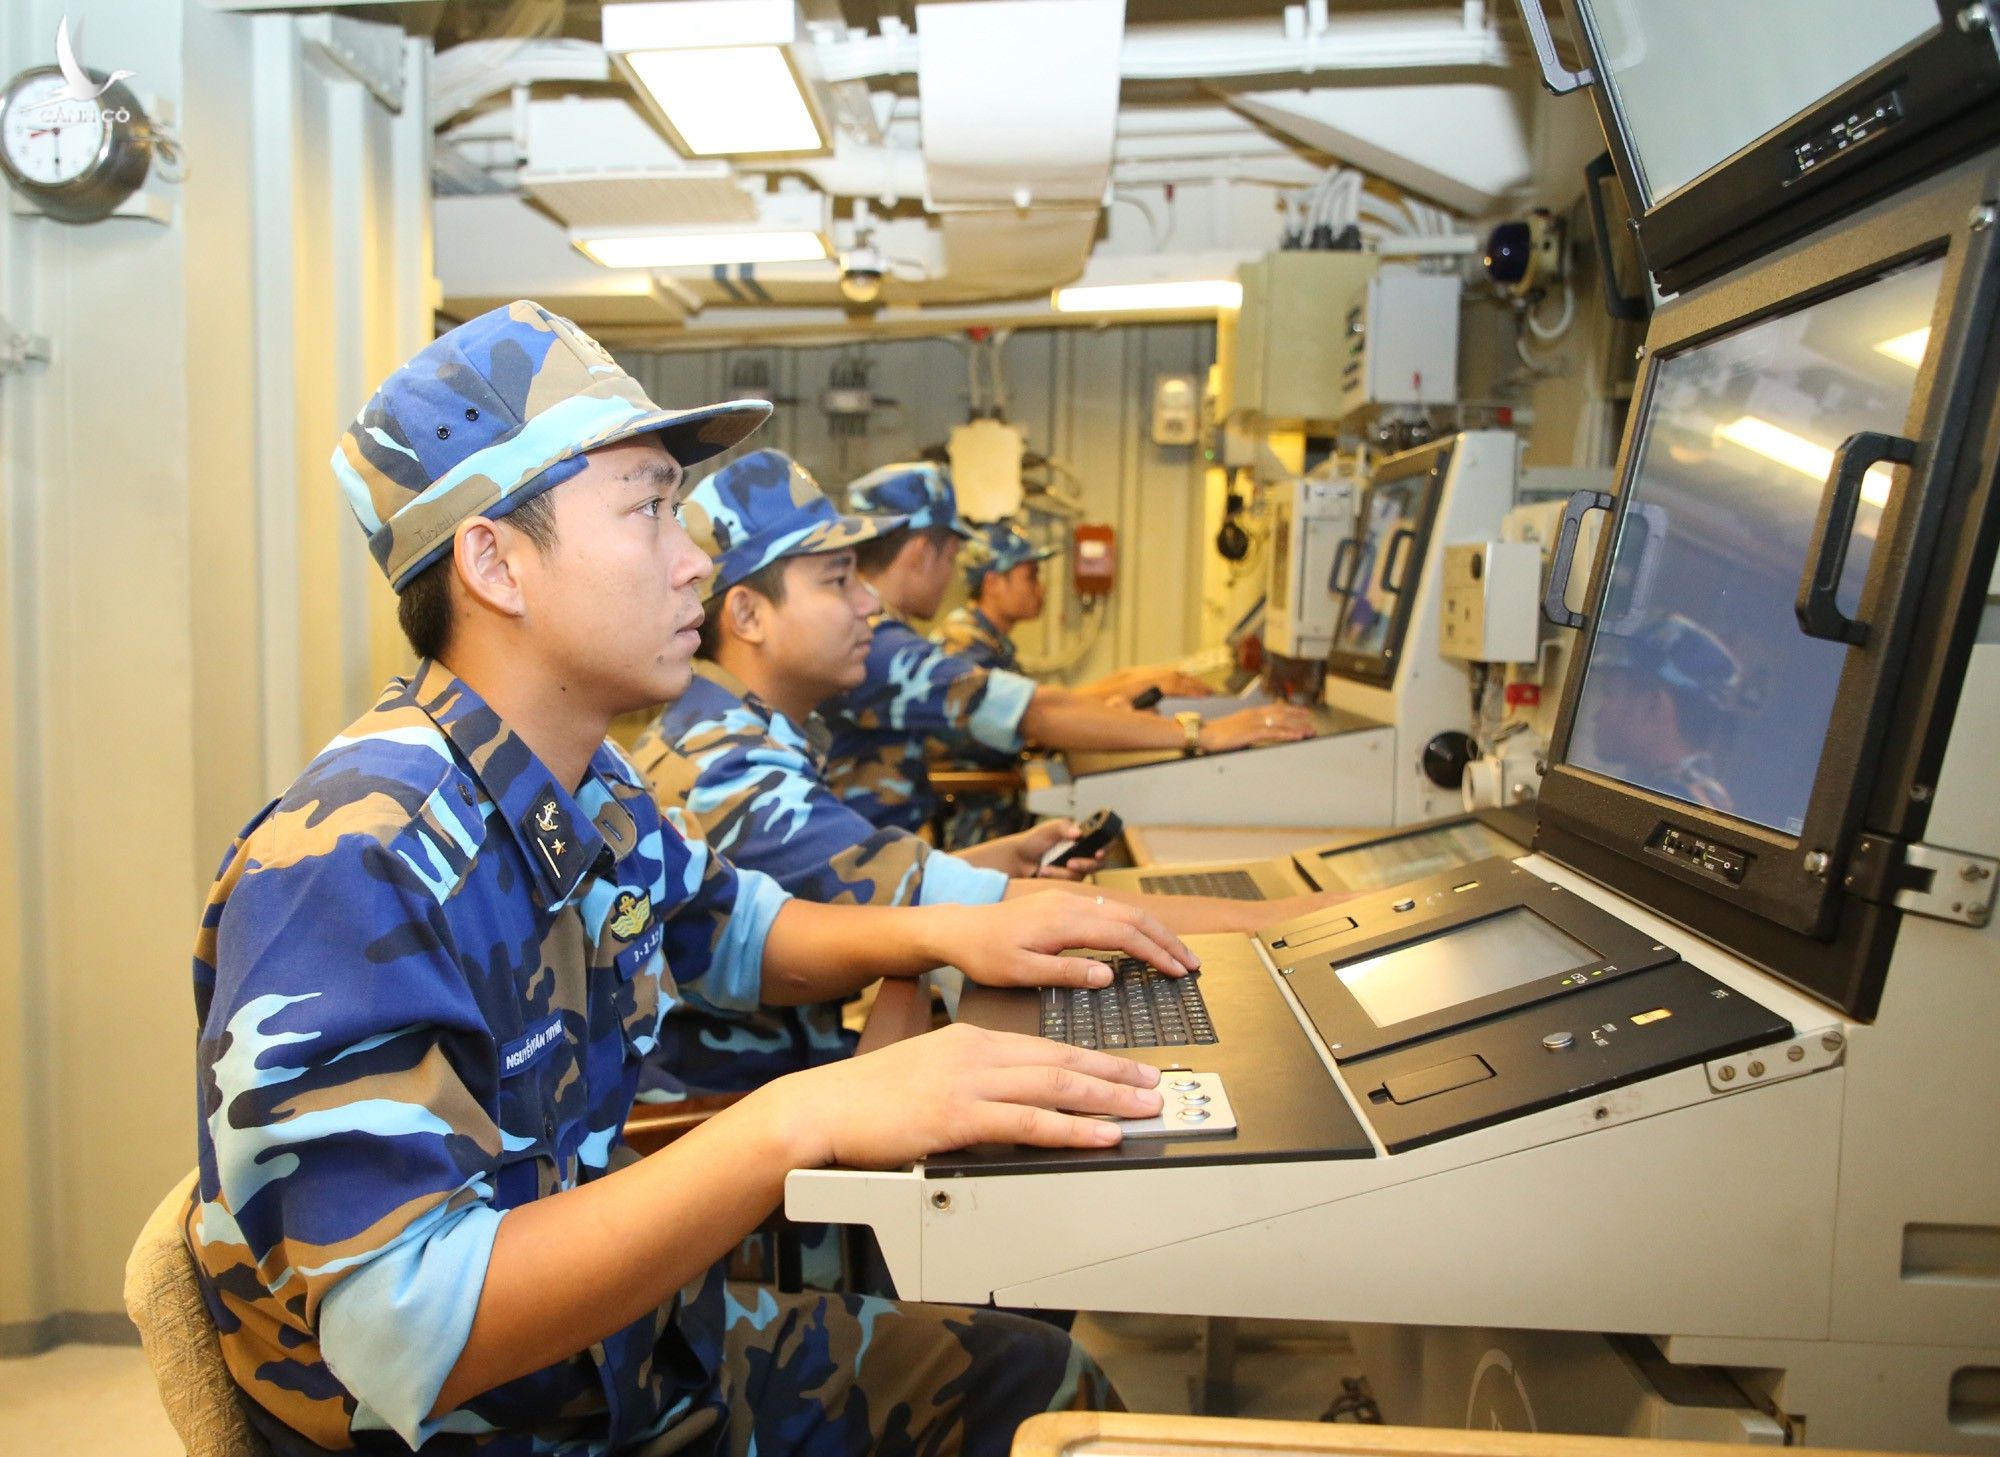 Tàu 016 Quang Trung được trang bị các hệ thống giám sát hải trình, hiển thị thông số cực kỳ hiện đại, vượt trội hơn nhiều so với các tàu chiến khác Hải quân Việt Nam từng sử dụng. Nguồn ảnh: QĐND. 